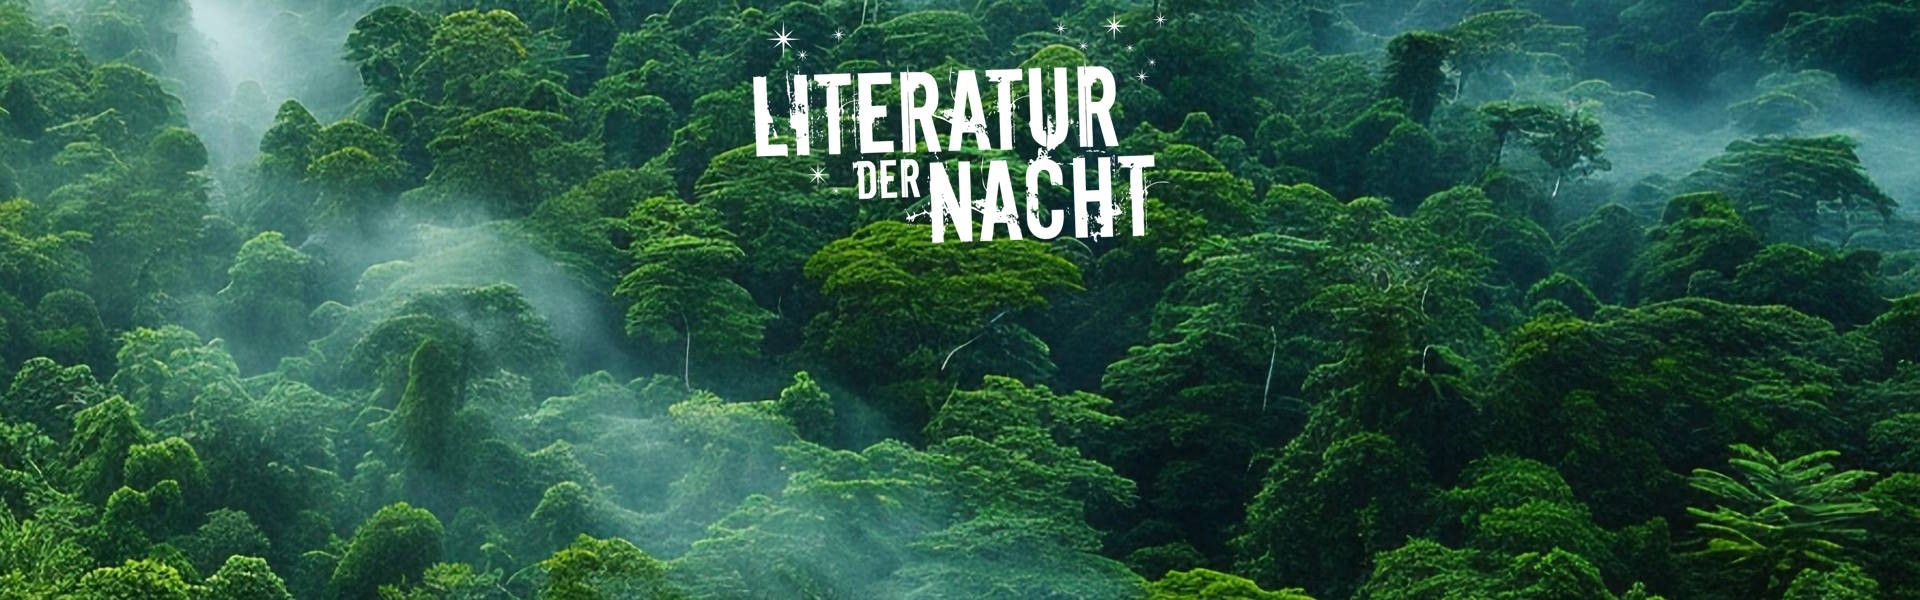 Literatur der Nacht - Dschungel